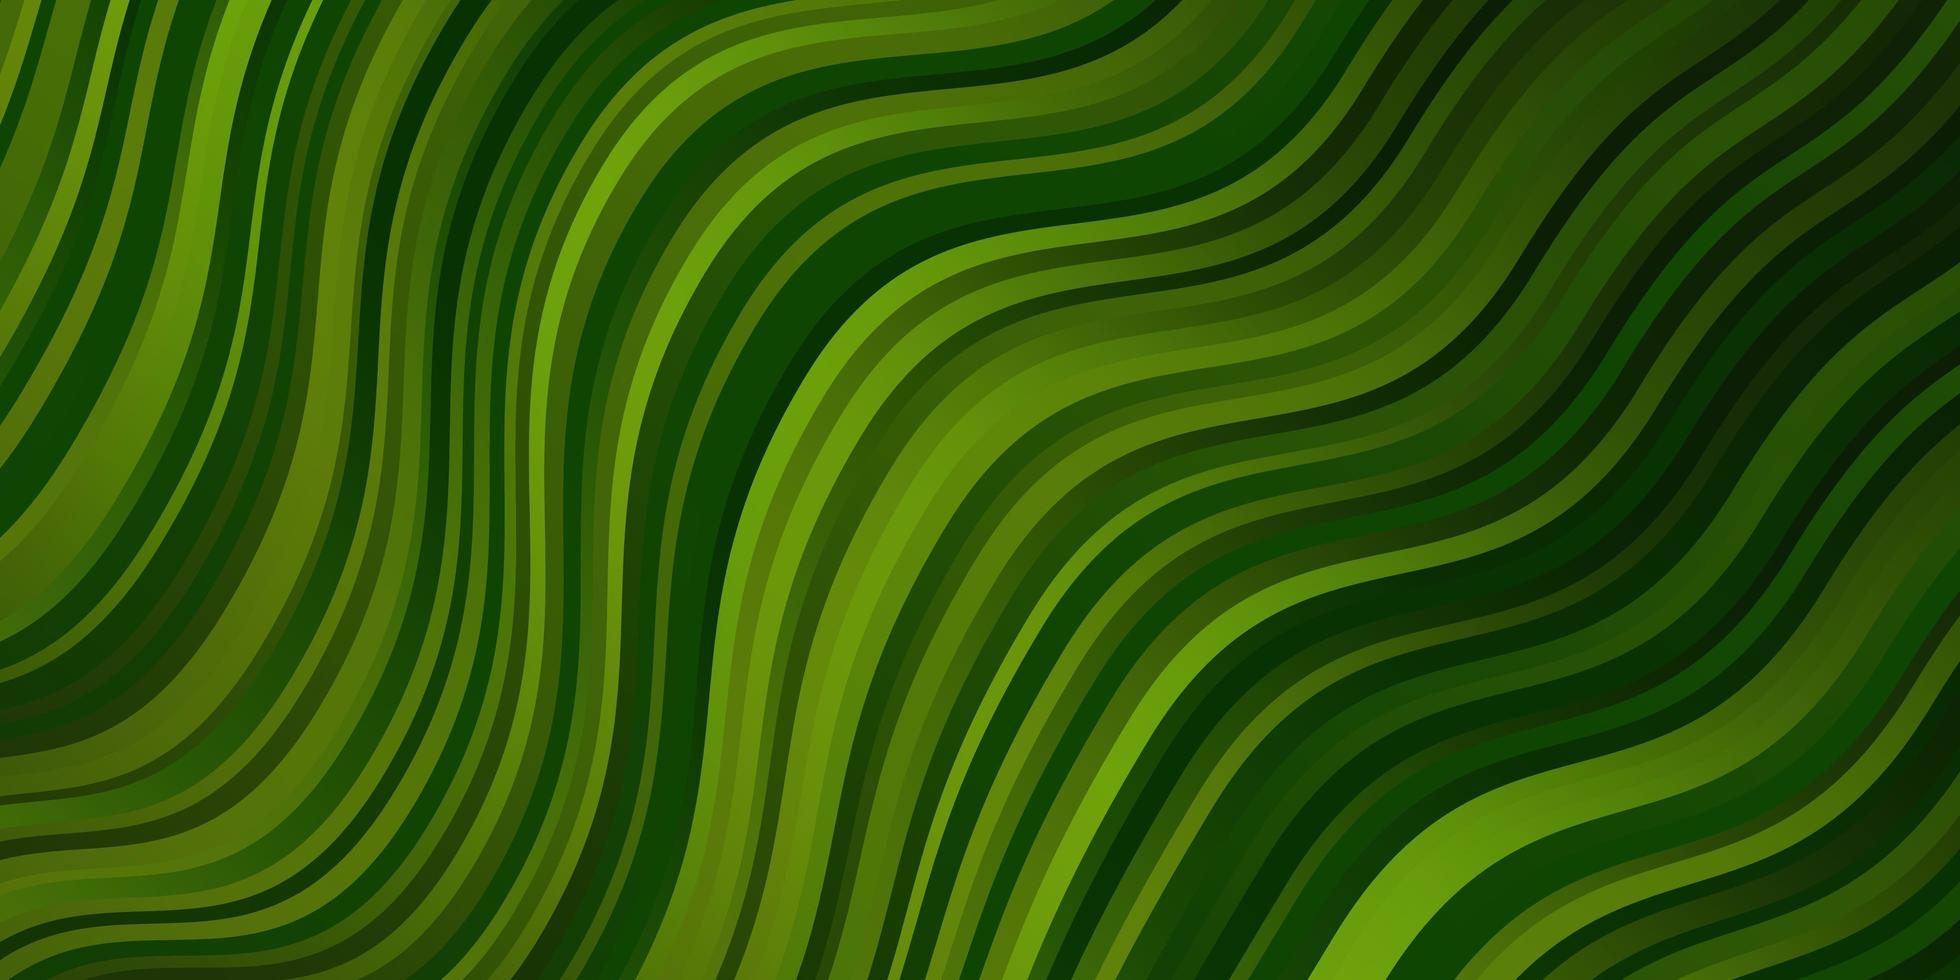 Fondo de vector verde claro con ilustración de gradiente de arco circular en estilo simple con patrón de arcos para anuncios comerciales